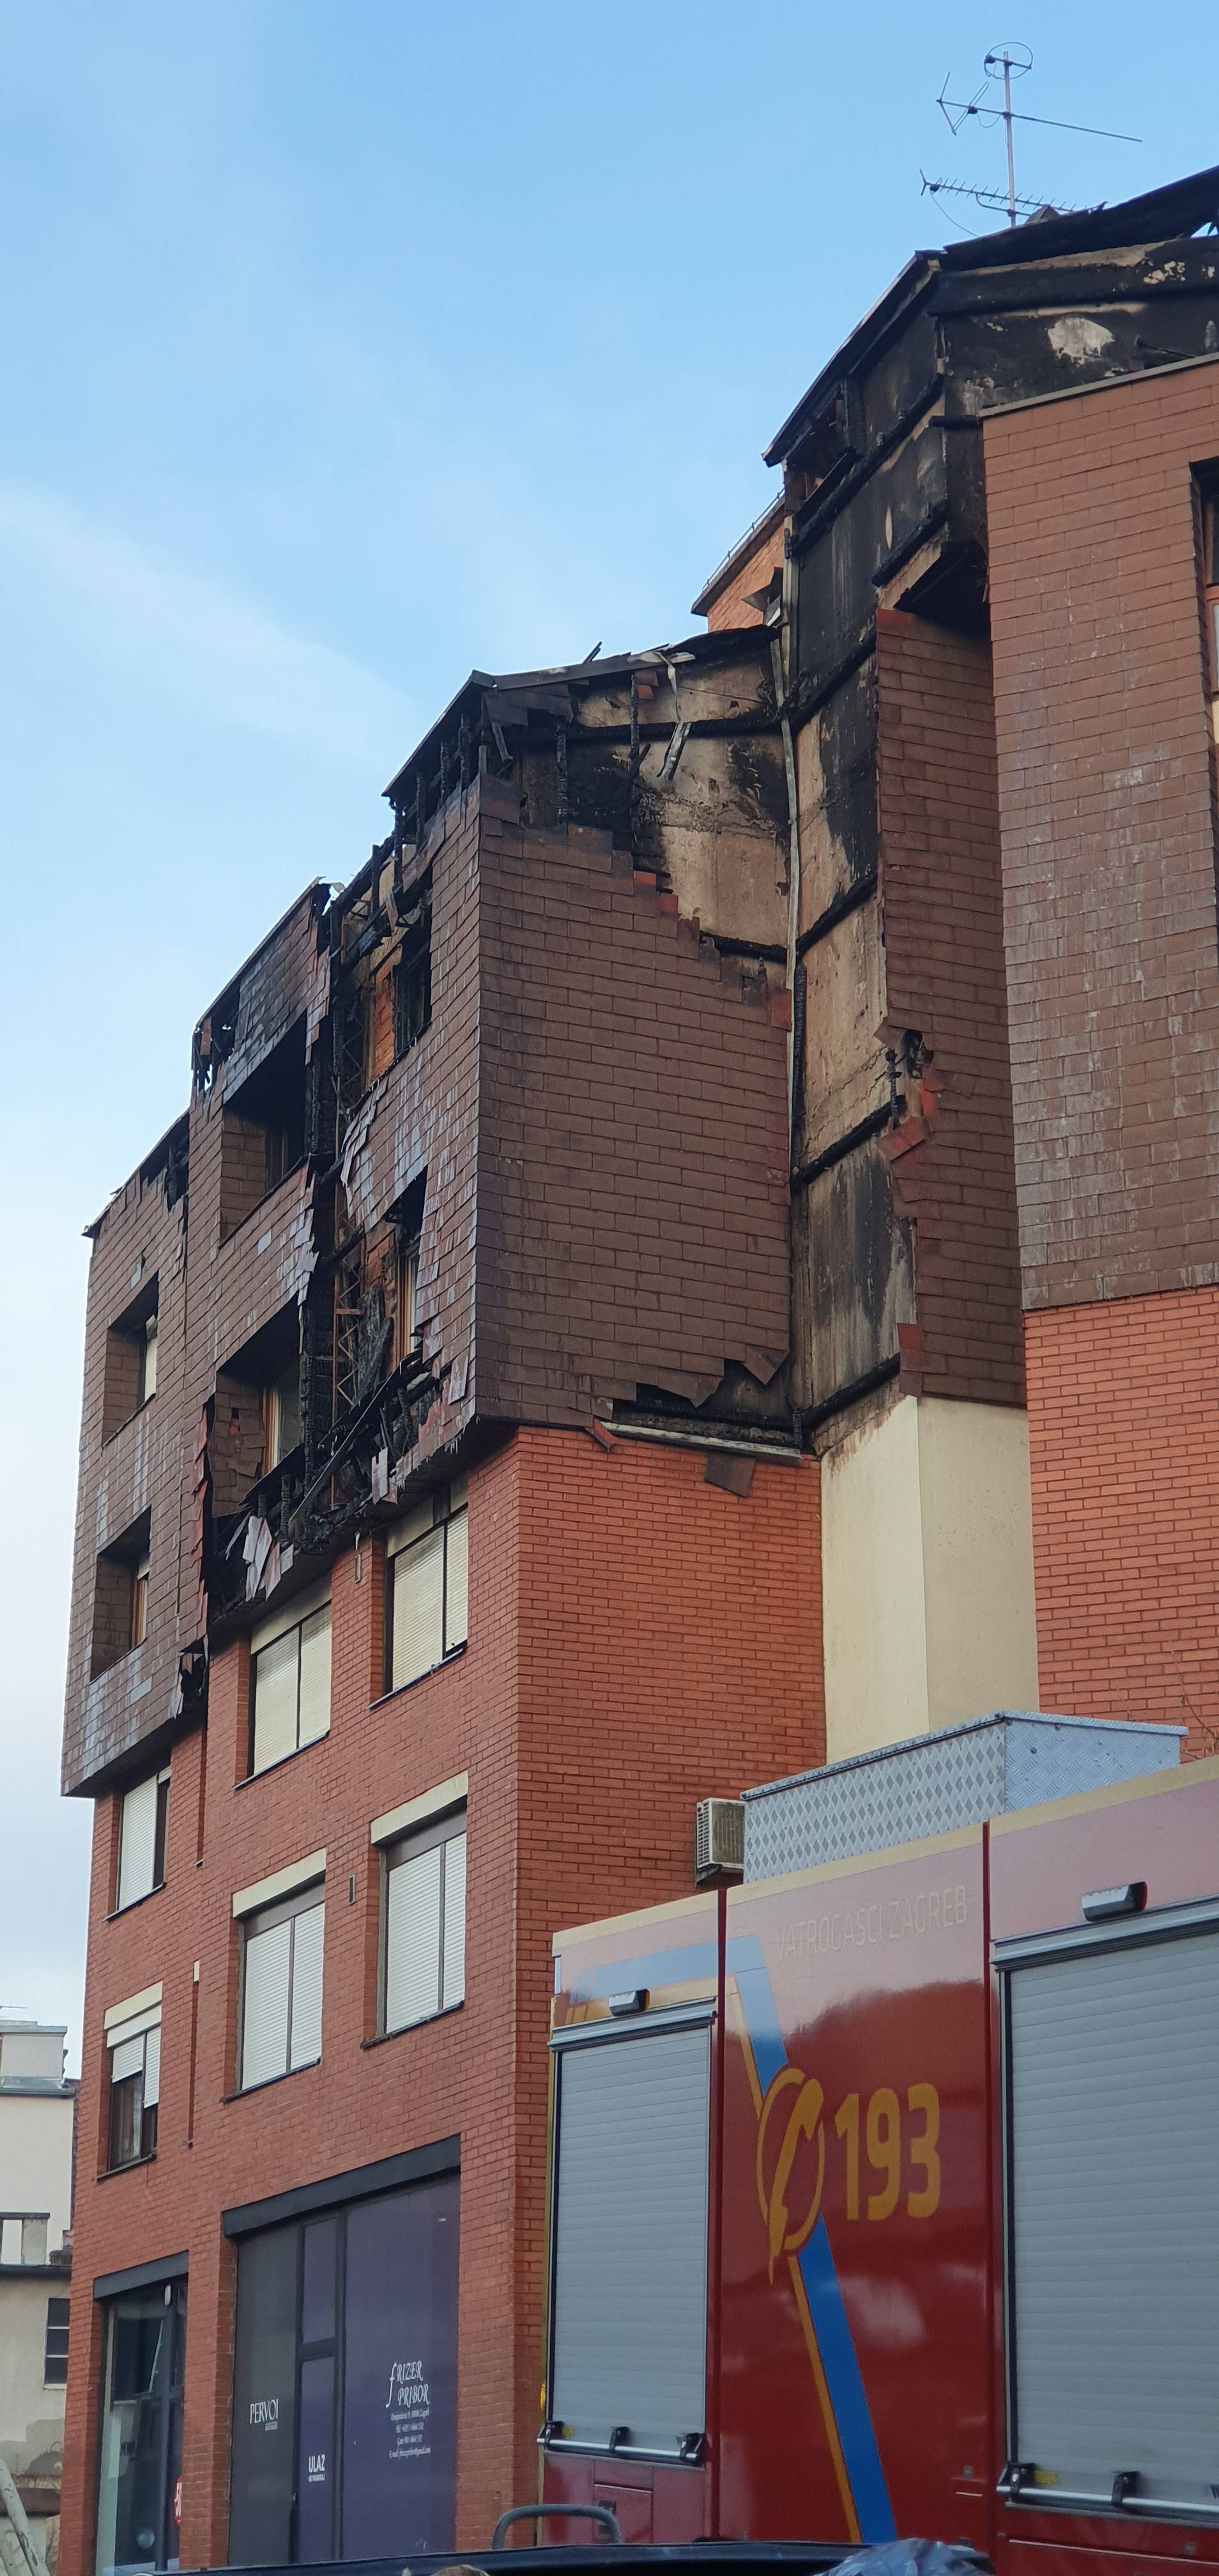 Vatrogasci i dalje na požarištu: 'Susjeda je vrištala, u šoku je'